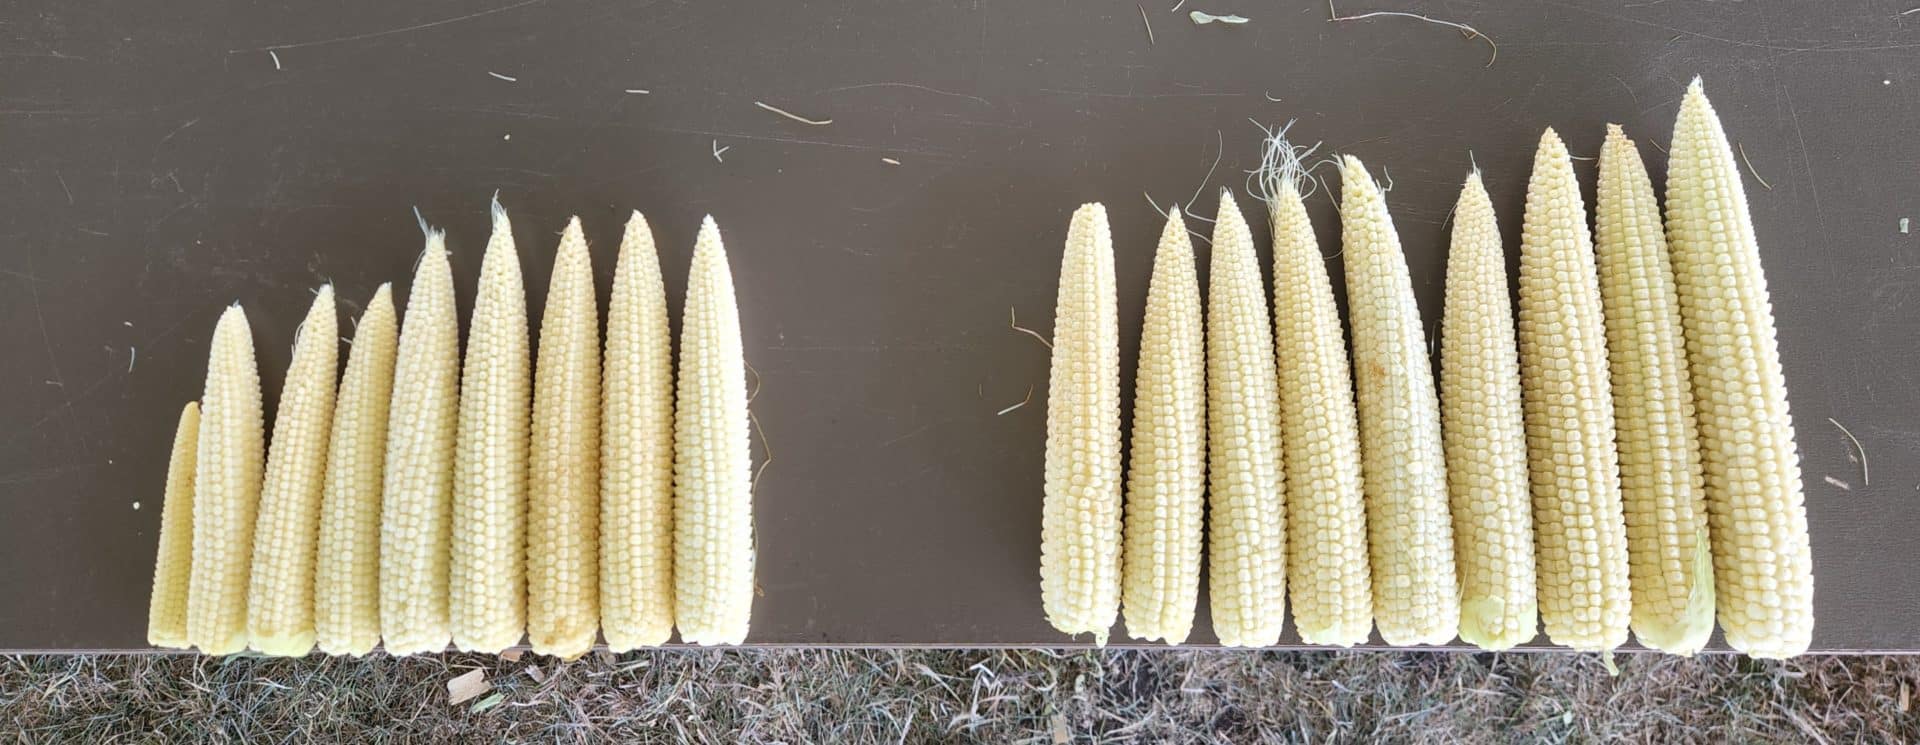 FarmFest Corn Cropped Flipped